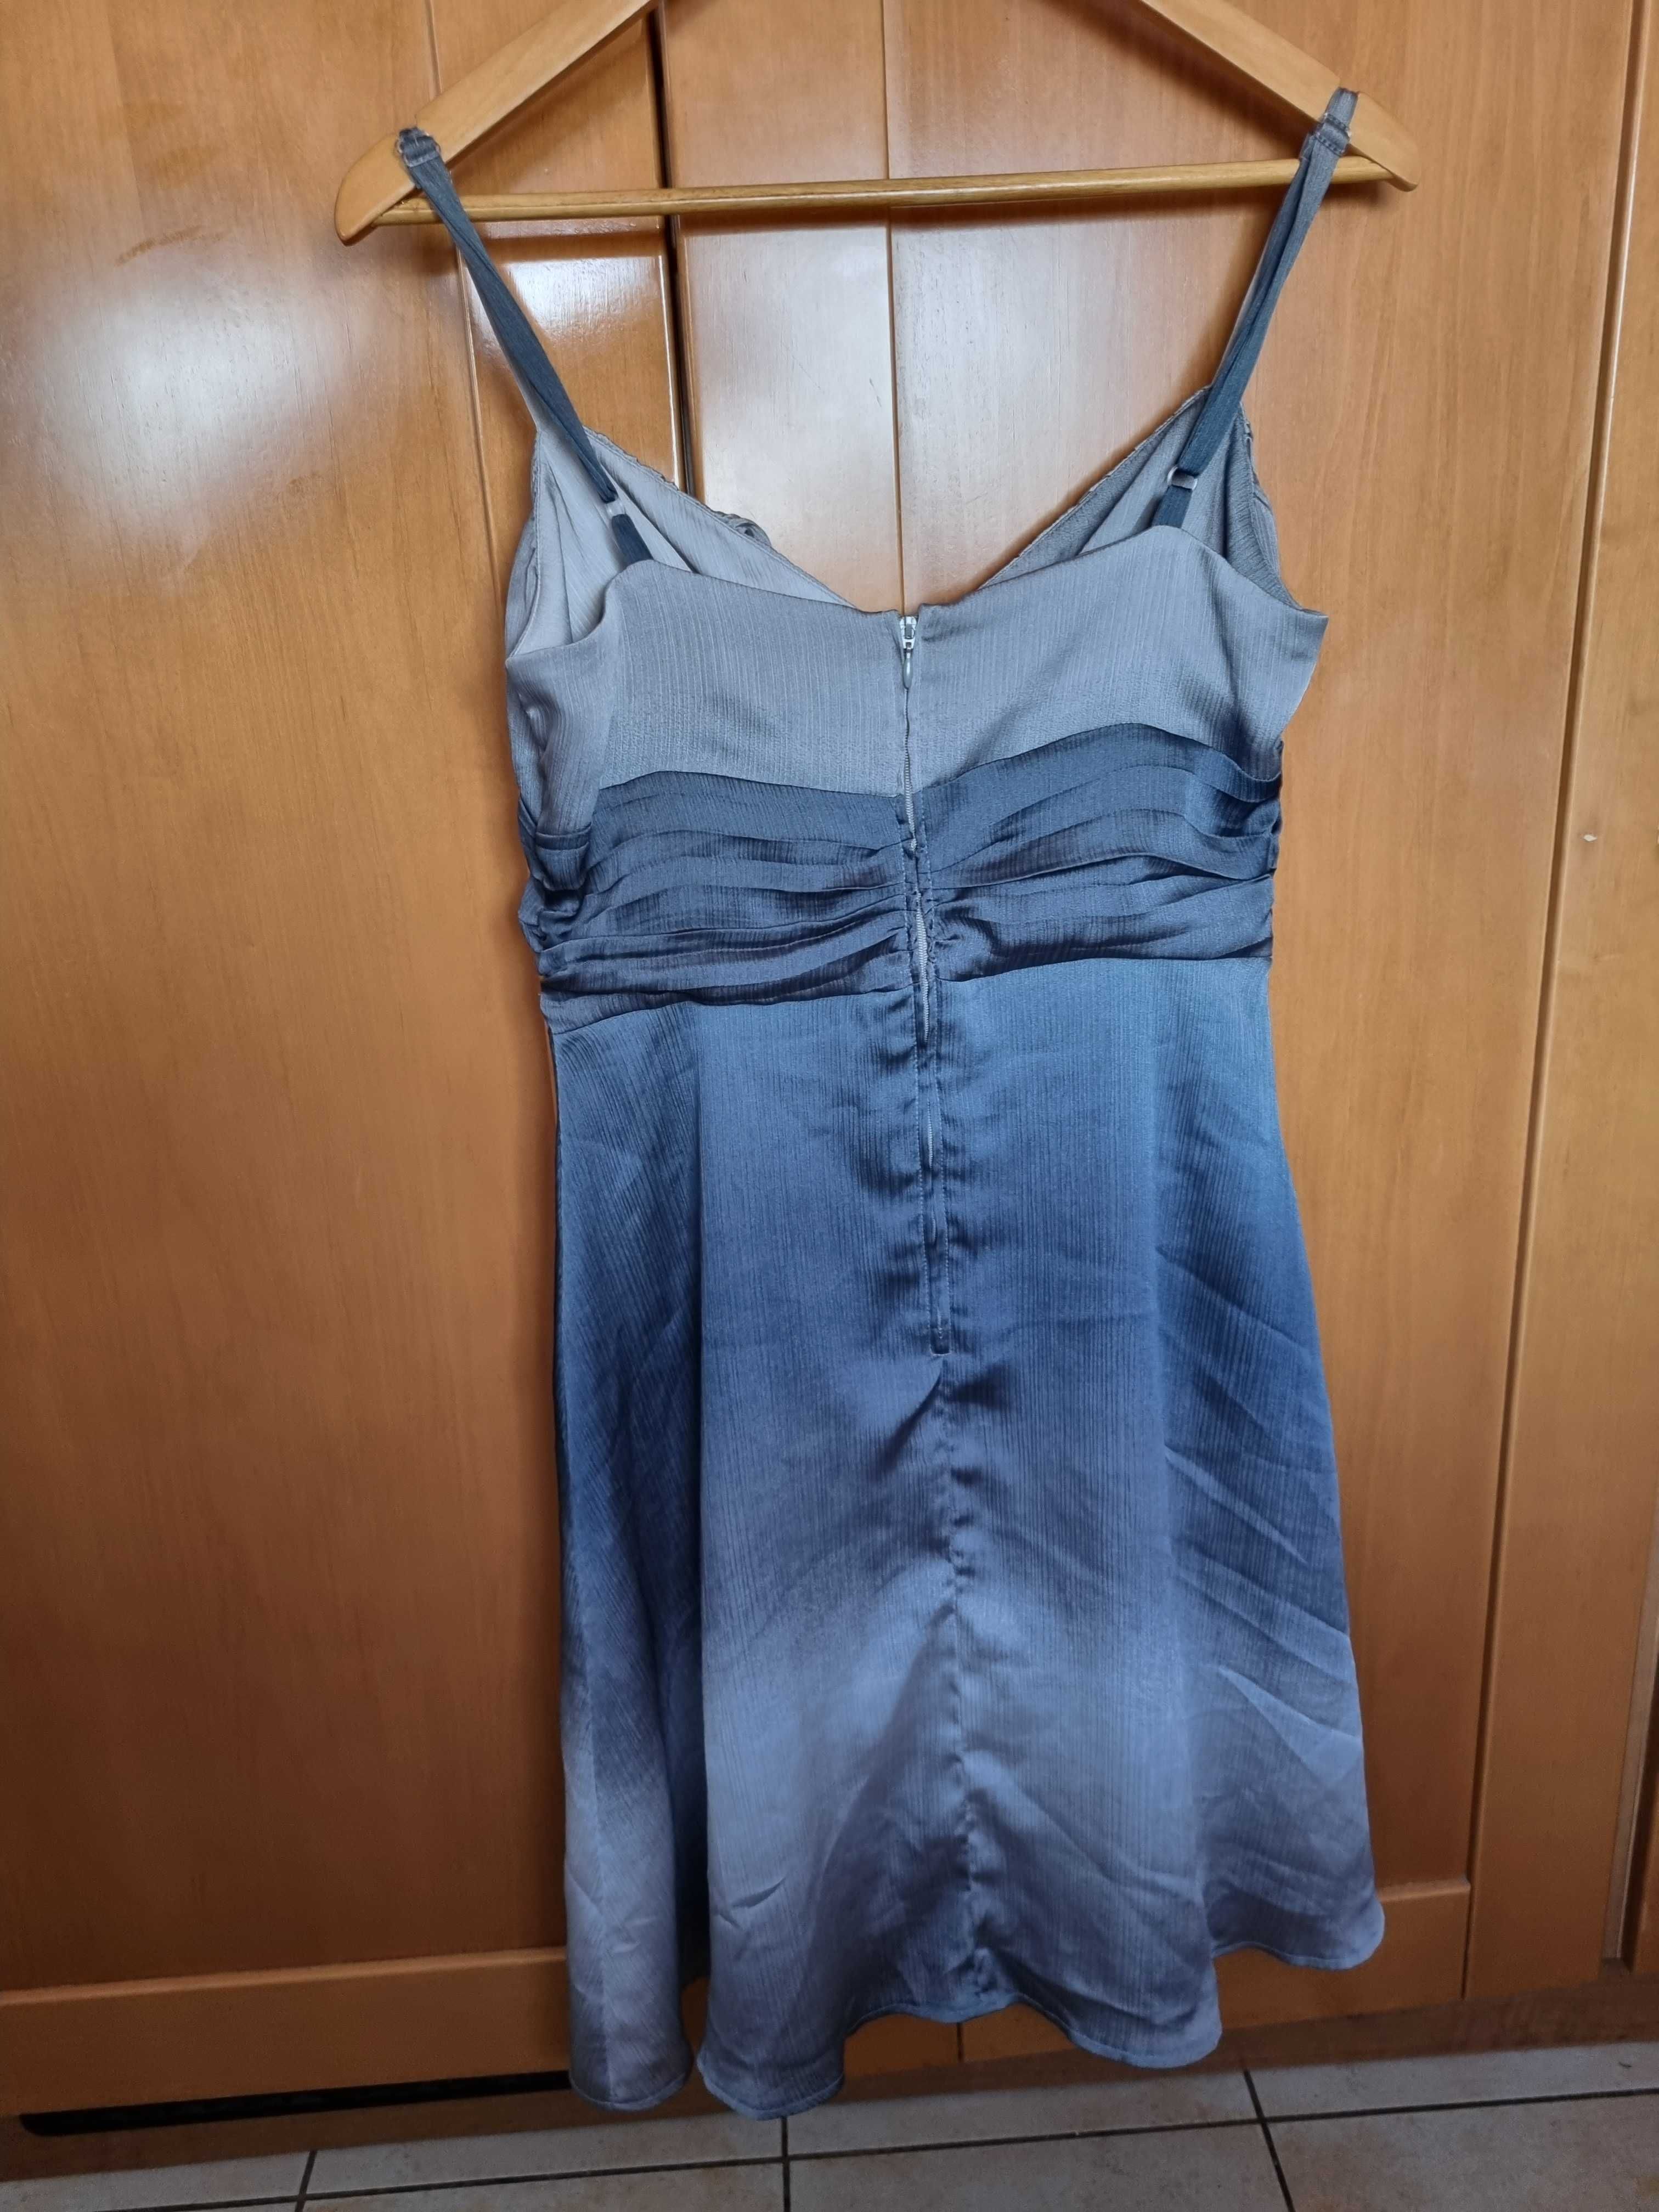 Szara sukienka Orsay, rozmiar M, cena 25 zł